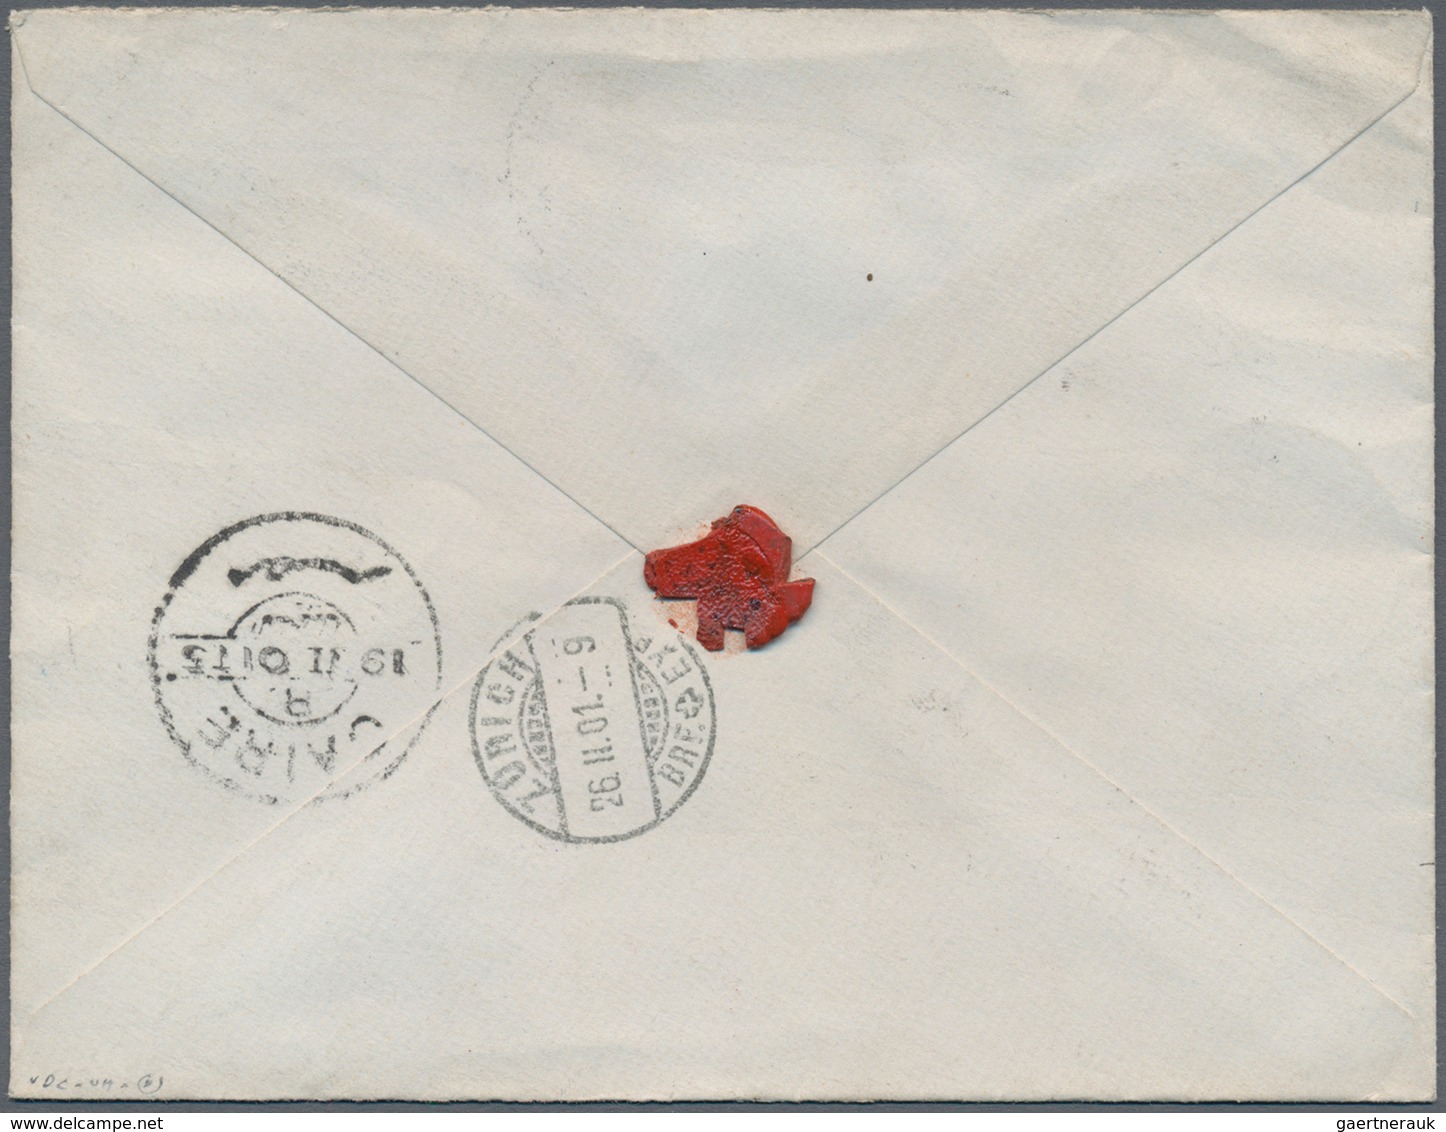 00469 Ägypten: 1881-1909, 8 Different Stamps Of The De La Rue Issues Including The 5 Piastres Pale Grey An - 1915-1921 Britischer Schutzstaat